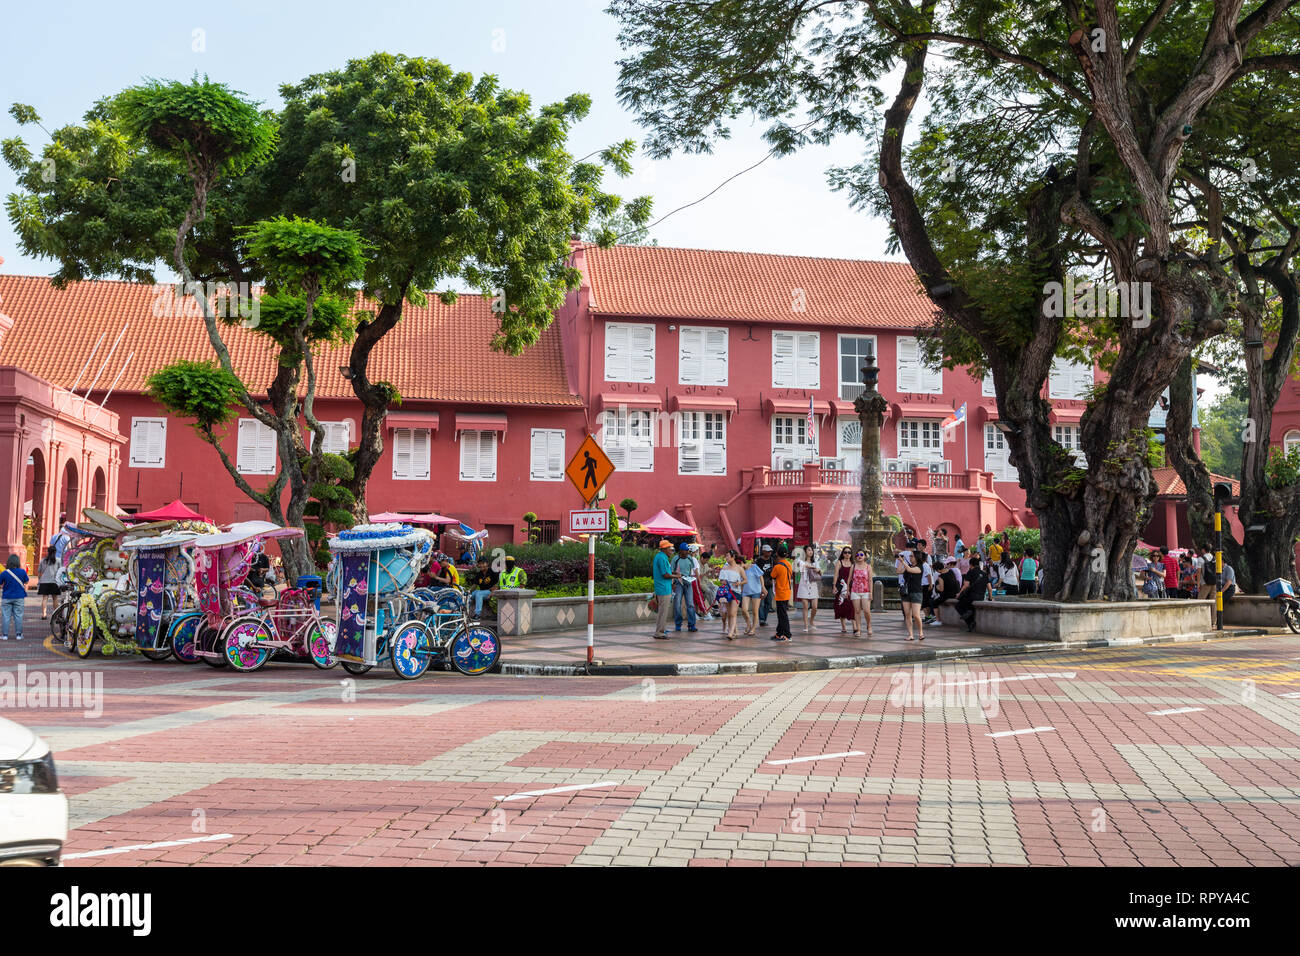 Stadthuys, ehemaligen niederländischen Governor's Residence und Rathaus, erbaut 1650. Trishaws für Touristen im Vordergrund. Melaka, Malaysia. Stockfoto